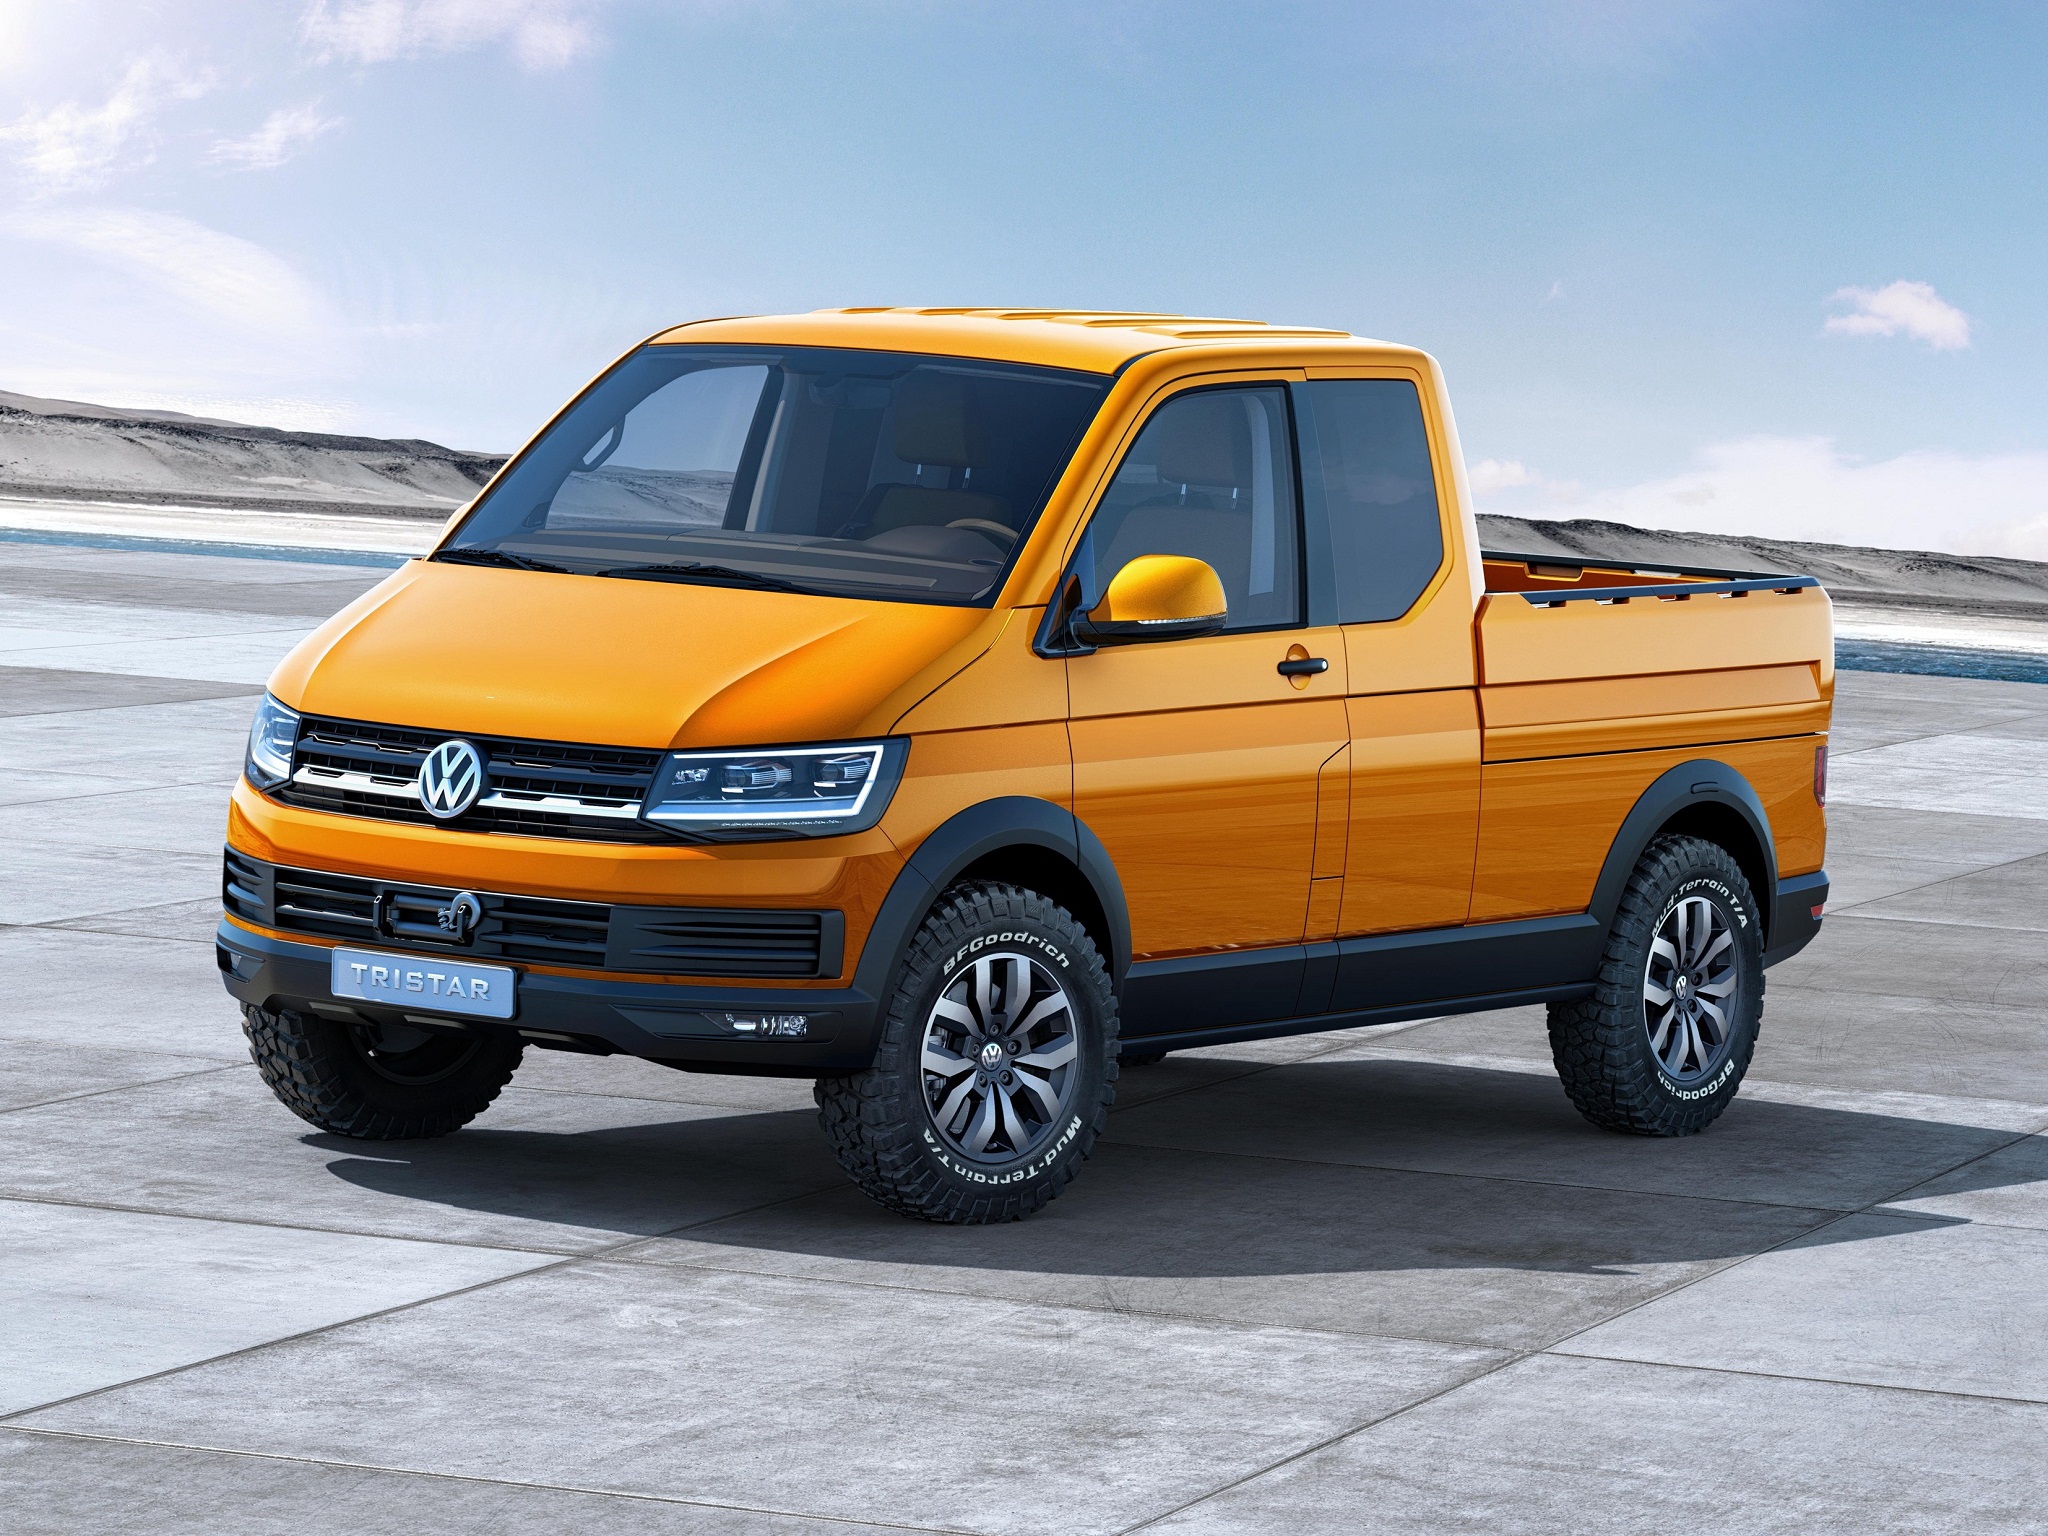 Download mobile wallpaper Volkswagen Tristar, Volkswagen, Vehicles for free.